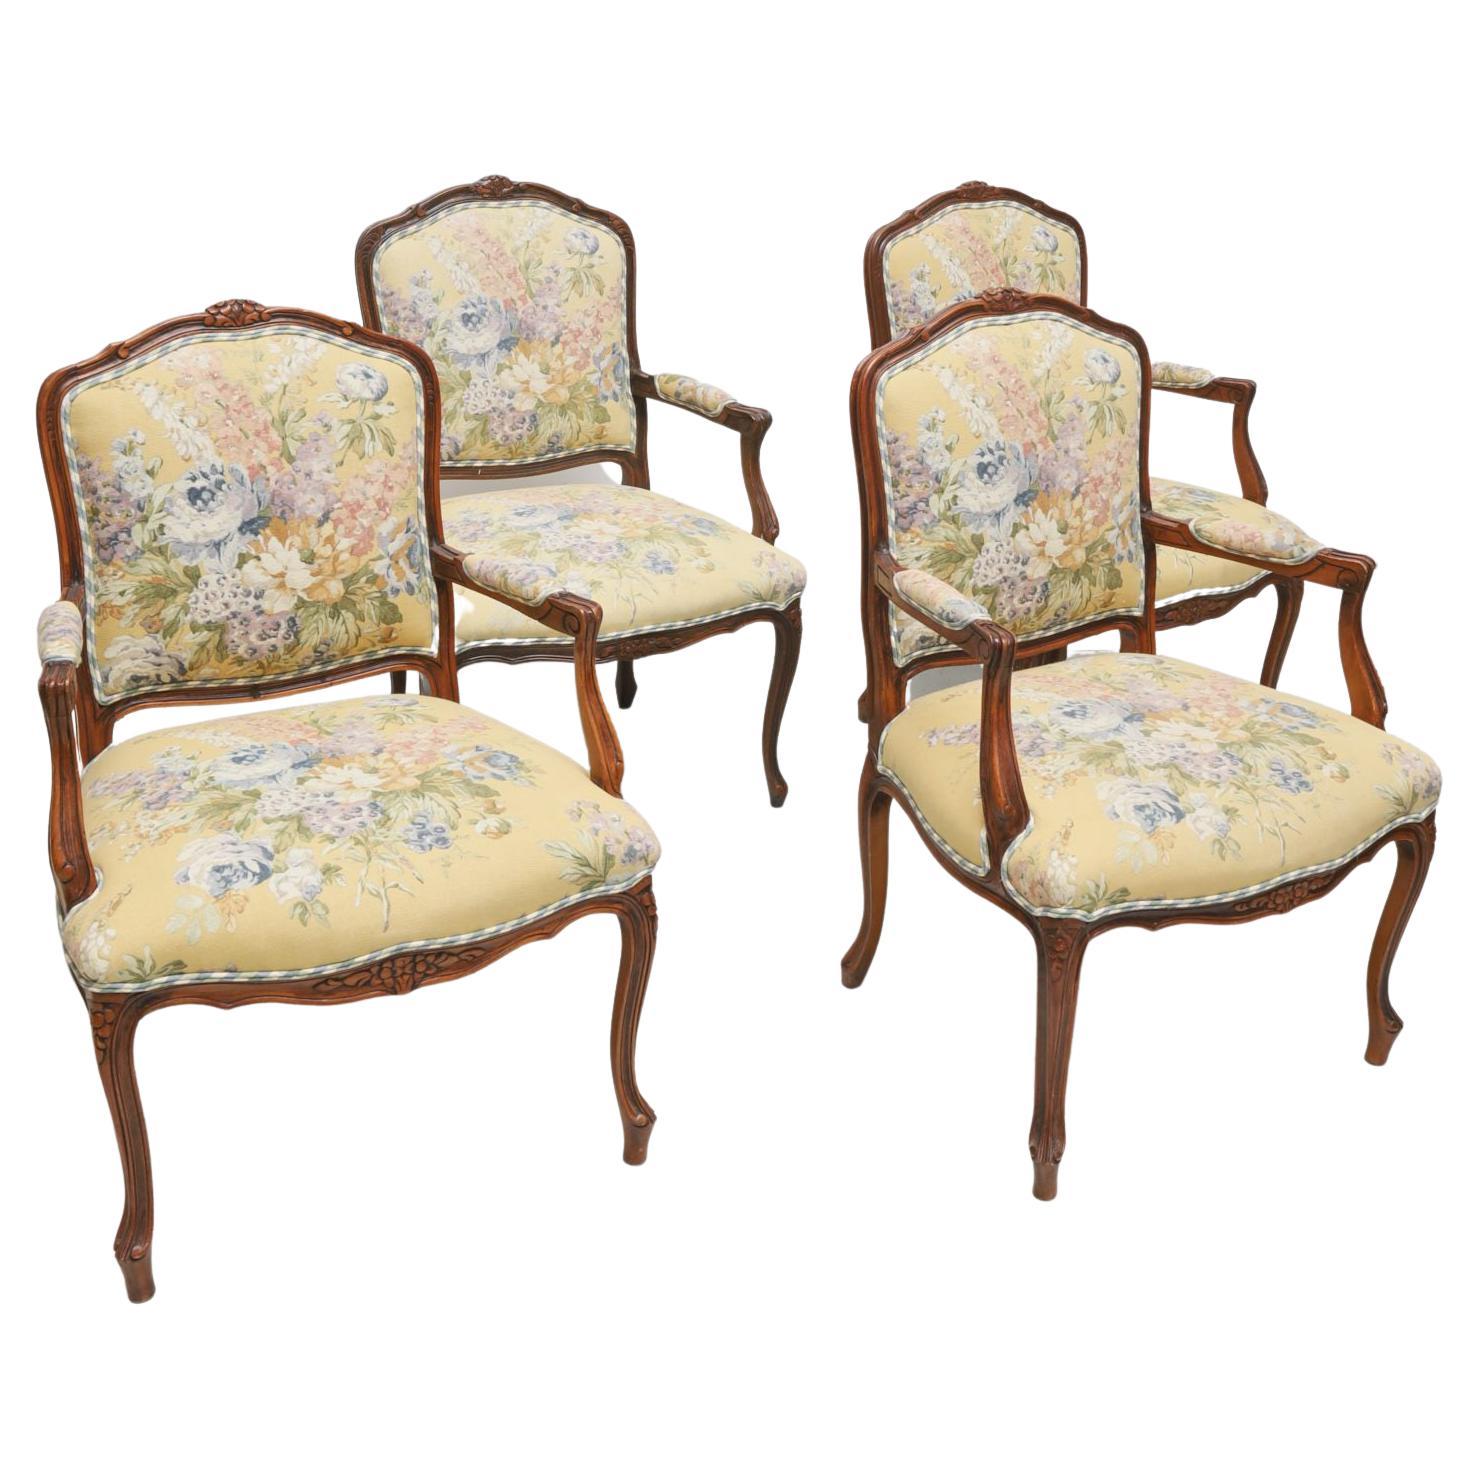 Gepolsterte Sessel im Louis XV-Stil mit Blumenmuster und Gingham-Muster aus dem späten 20. Jahrhundert